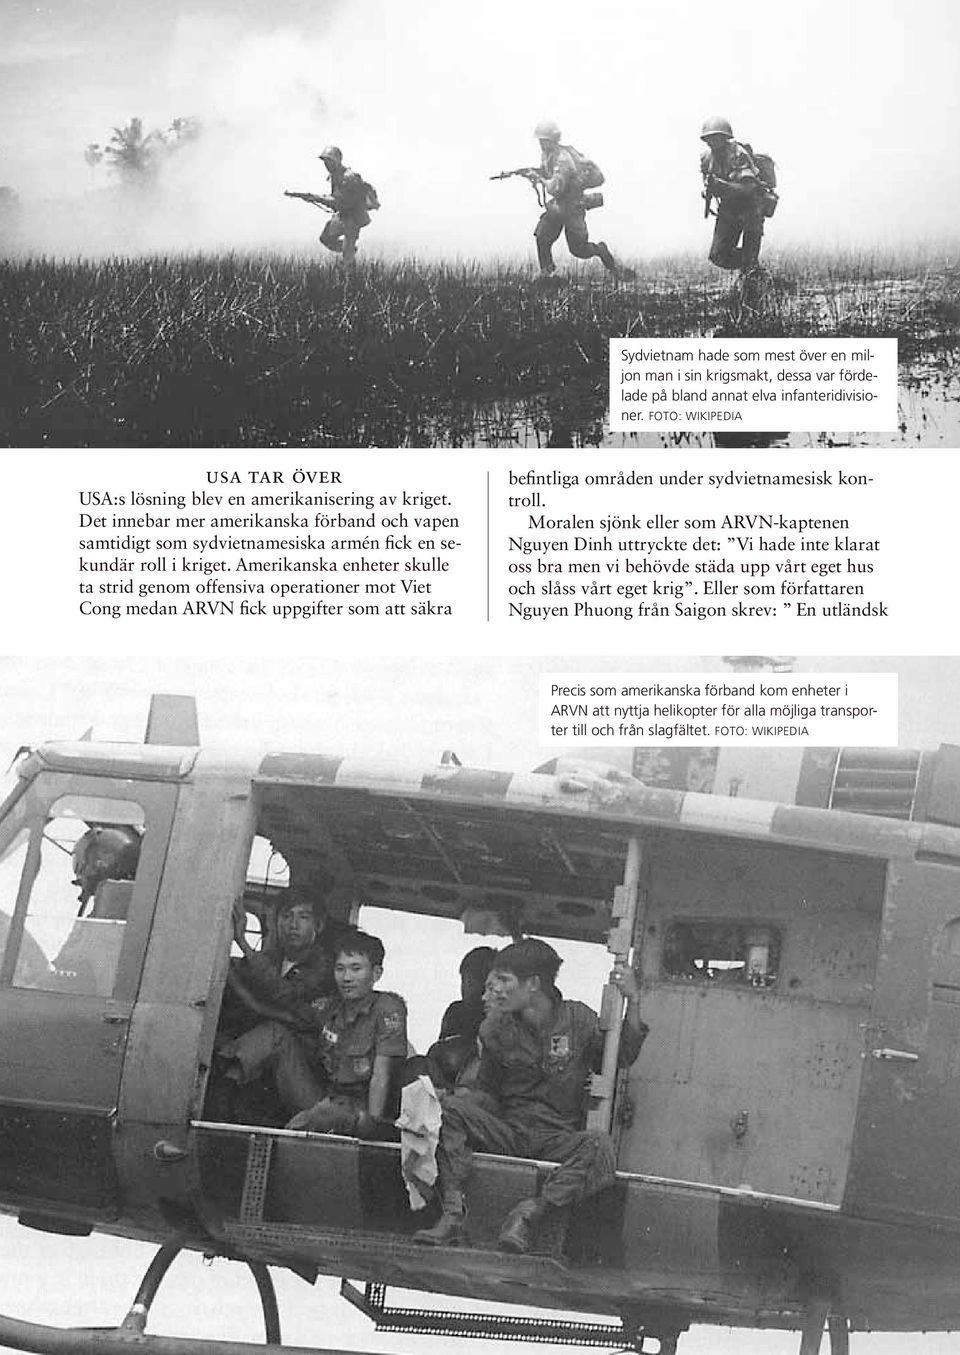 Amerikanska enheter skulle ta strid genom offensiva operationer mot Viet Cong medan ARVN fick uppgifter som att säkra befintliga områden under sydvietnamesisk kontroll.